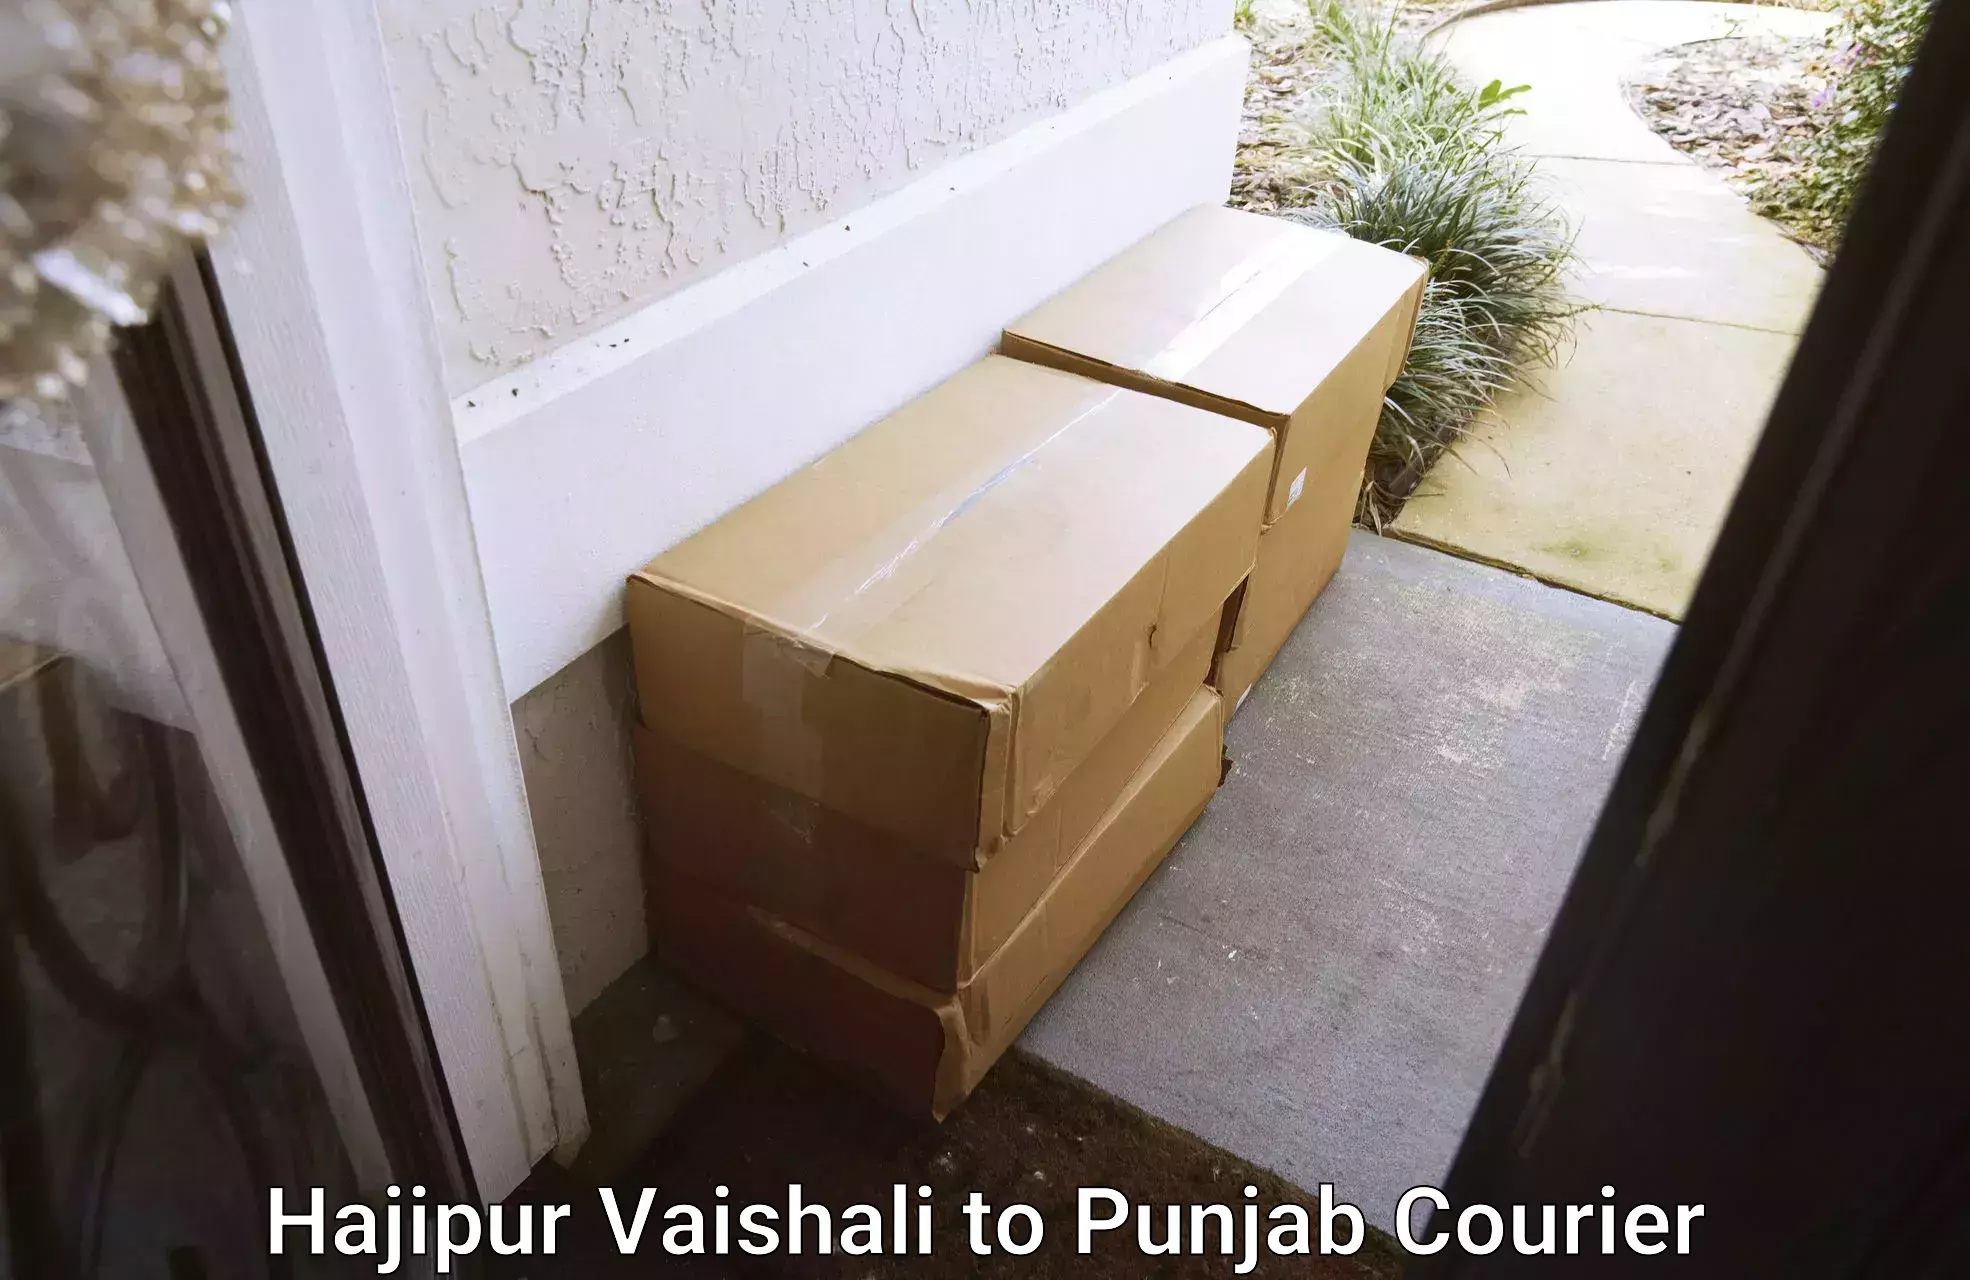 Moving and handling services Hajipur Vaishali to Amritsar